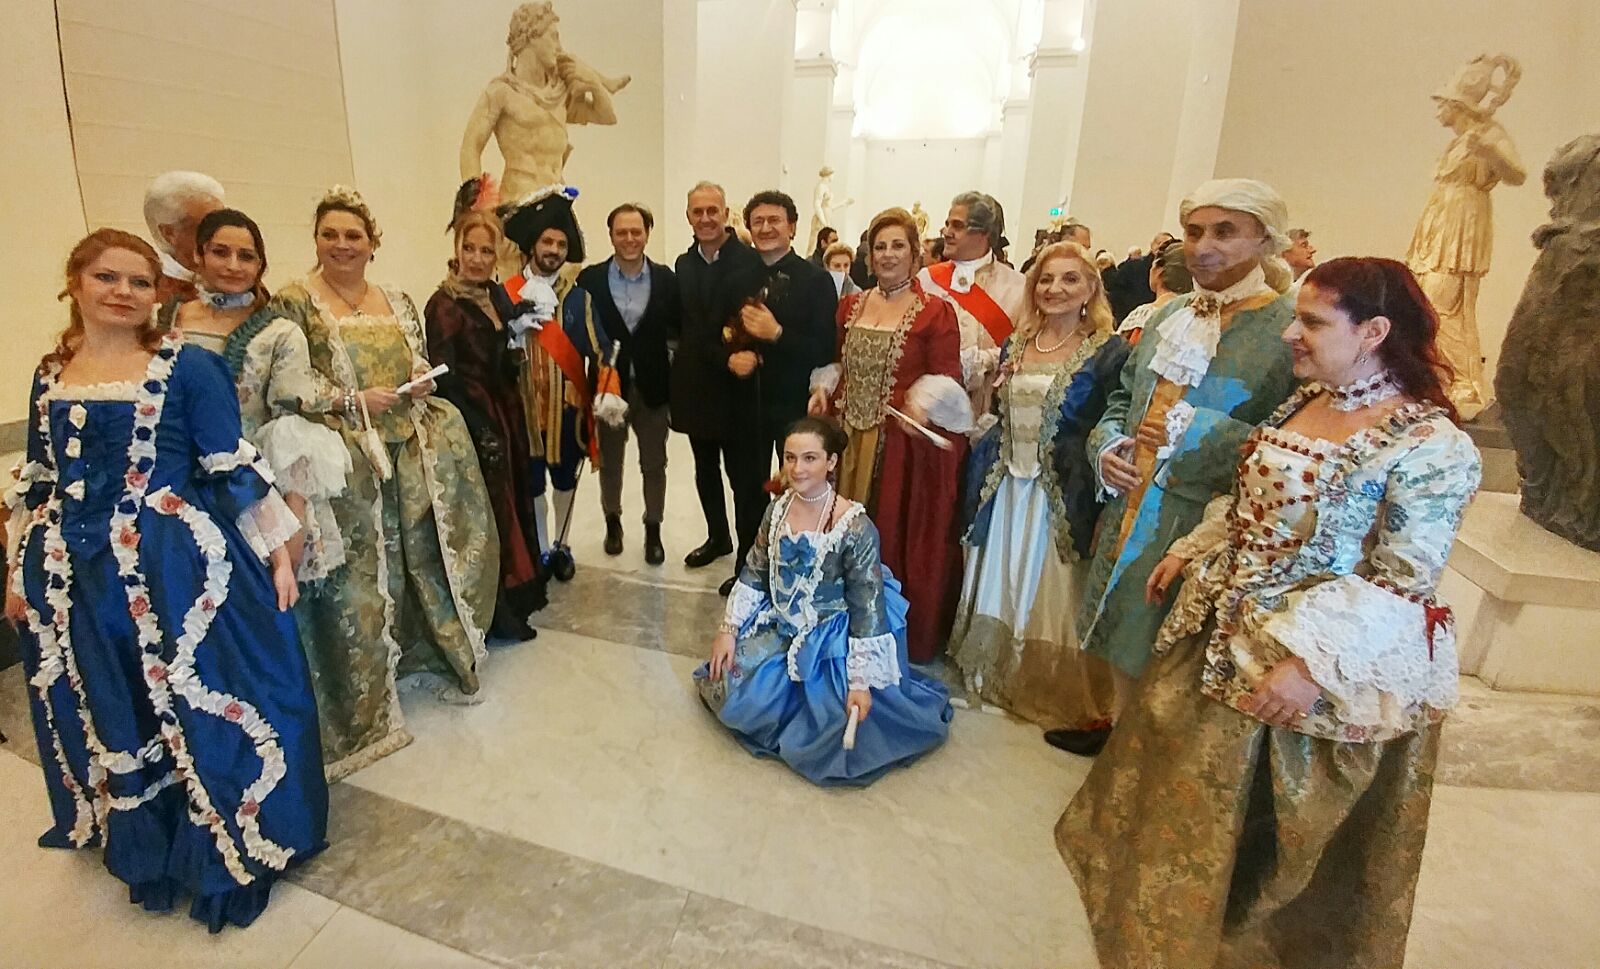  Festival Barocco Napoletano: prosegue la terza edizione di concerti gratuiti al MANN